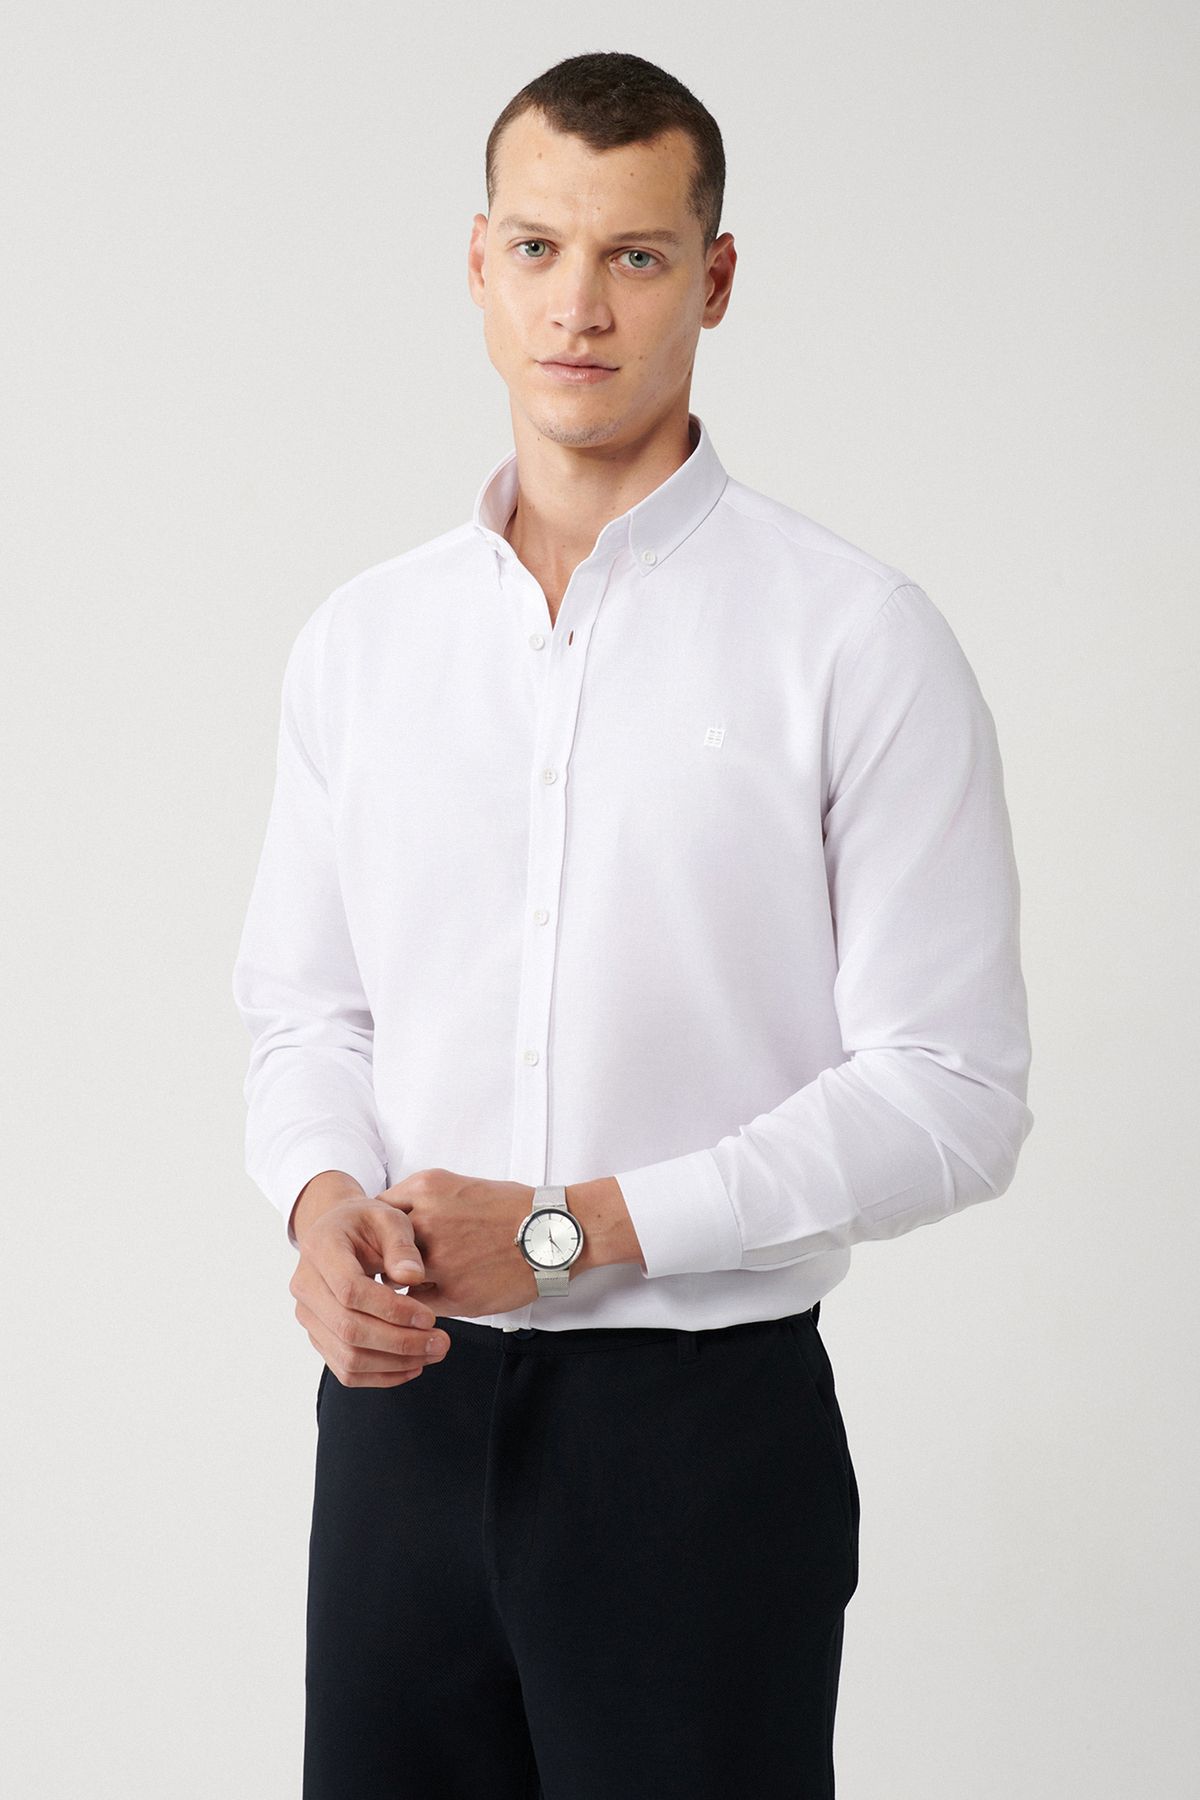 Avva Erkek Beyaz Düğmeli Yaka Kolay Ütülenebilir Oxford Pamuklu Regular Fit Gömlek E002000